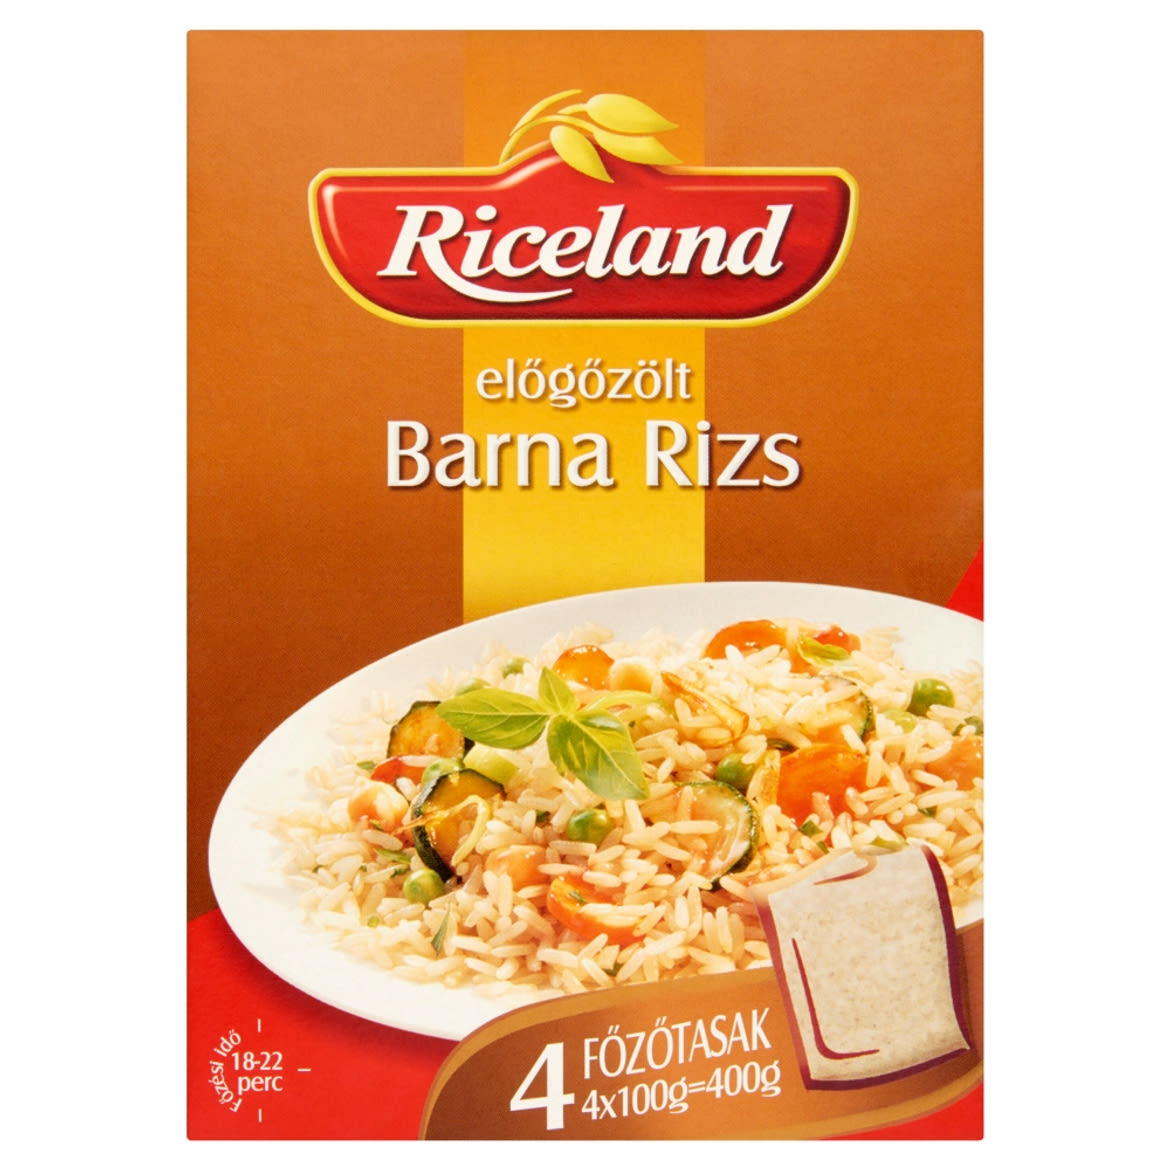 Riceland Előgőzölt Barna rizs 4 x